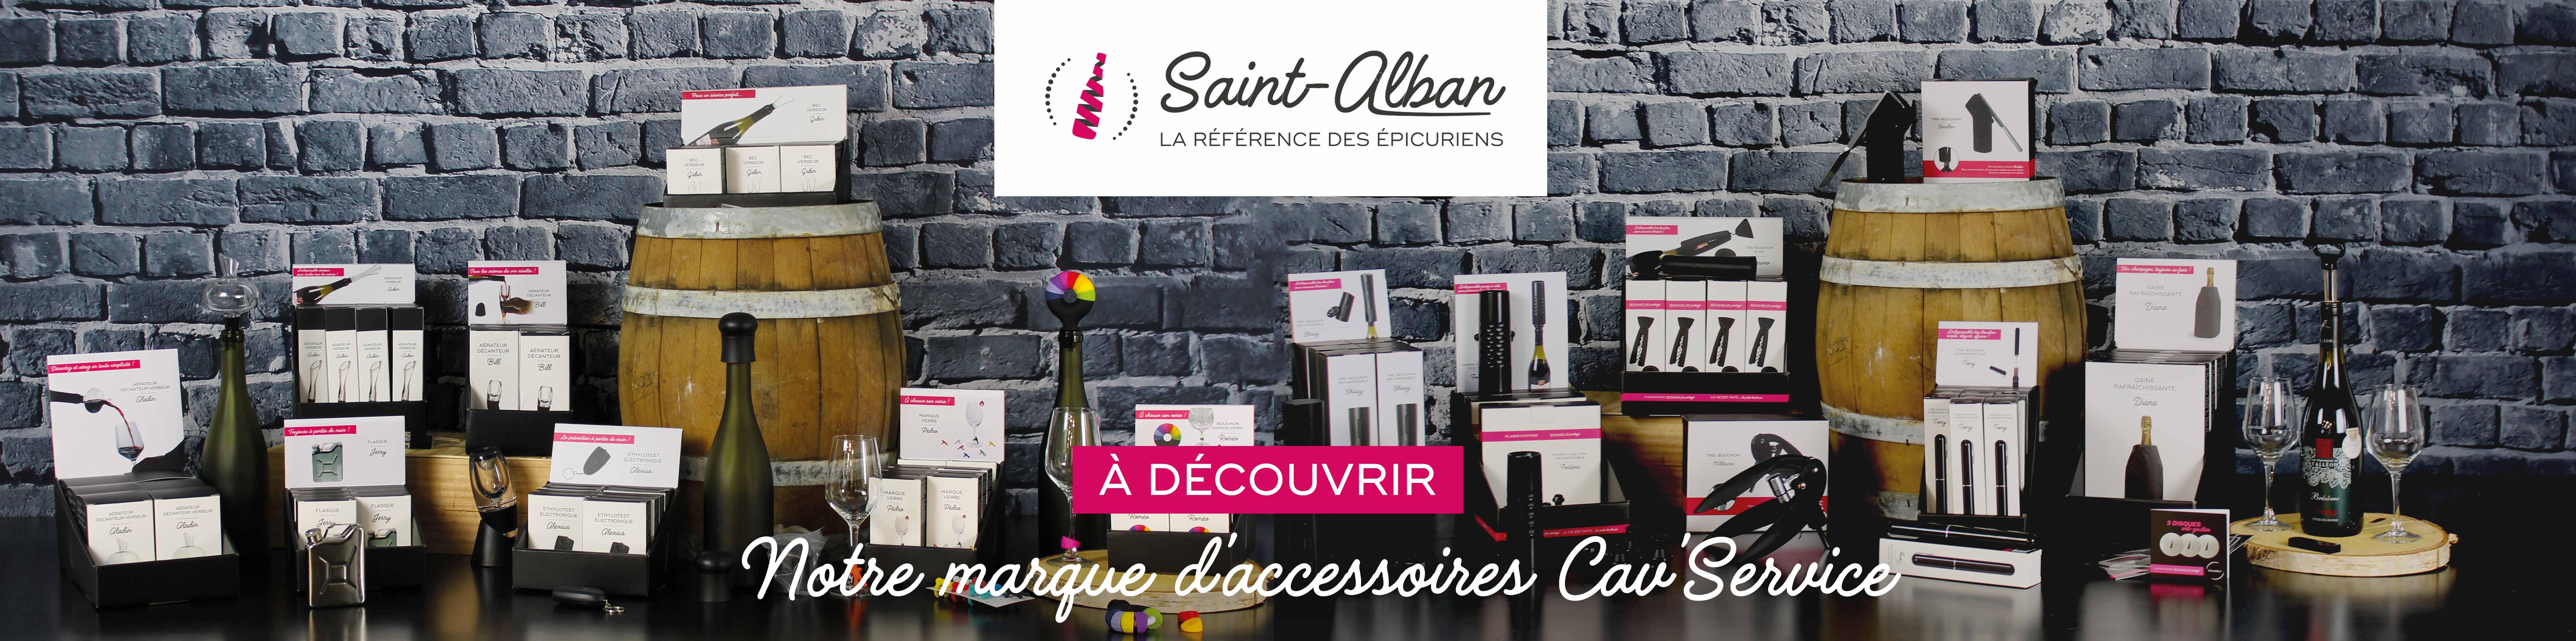 Bannière présentation gamme Saint-Alban